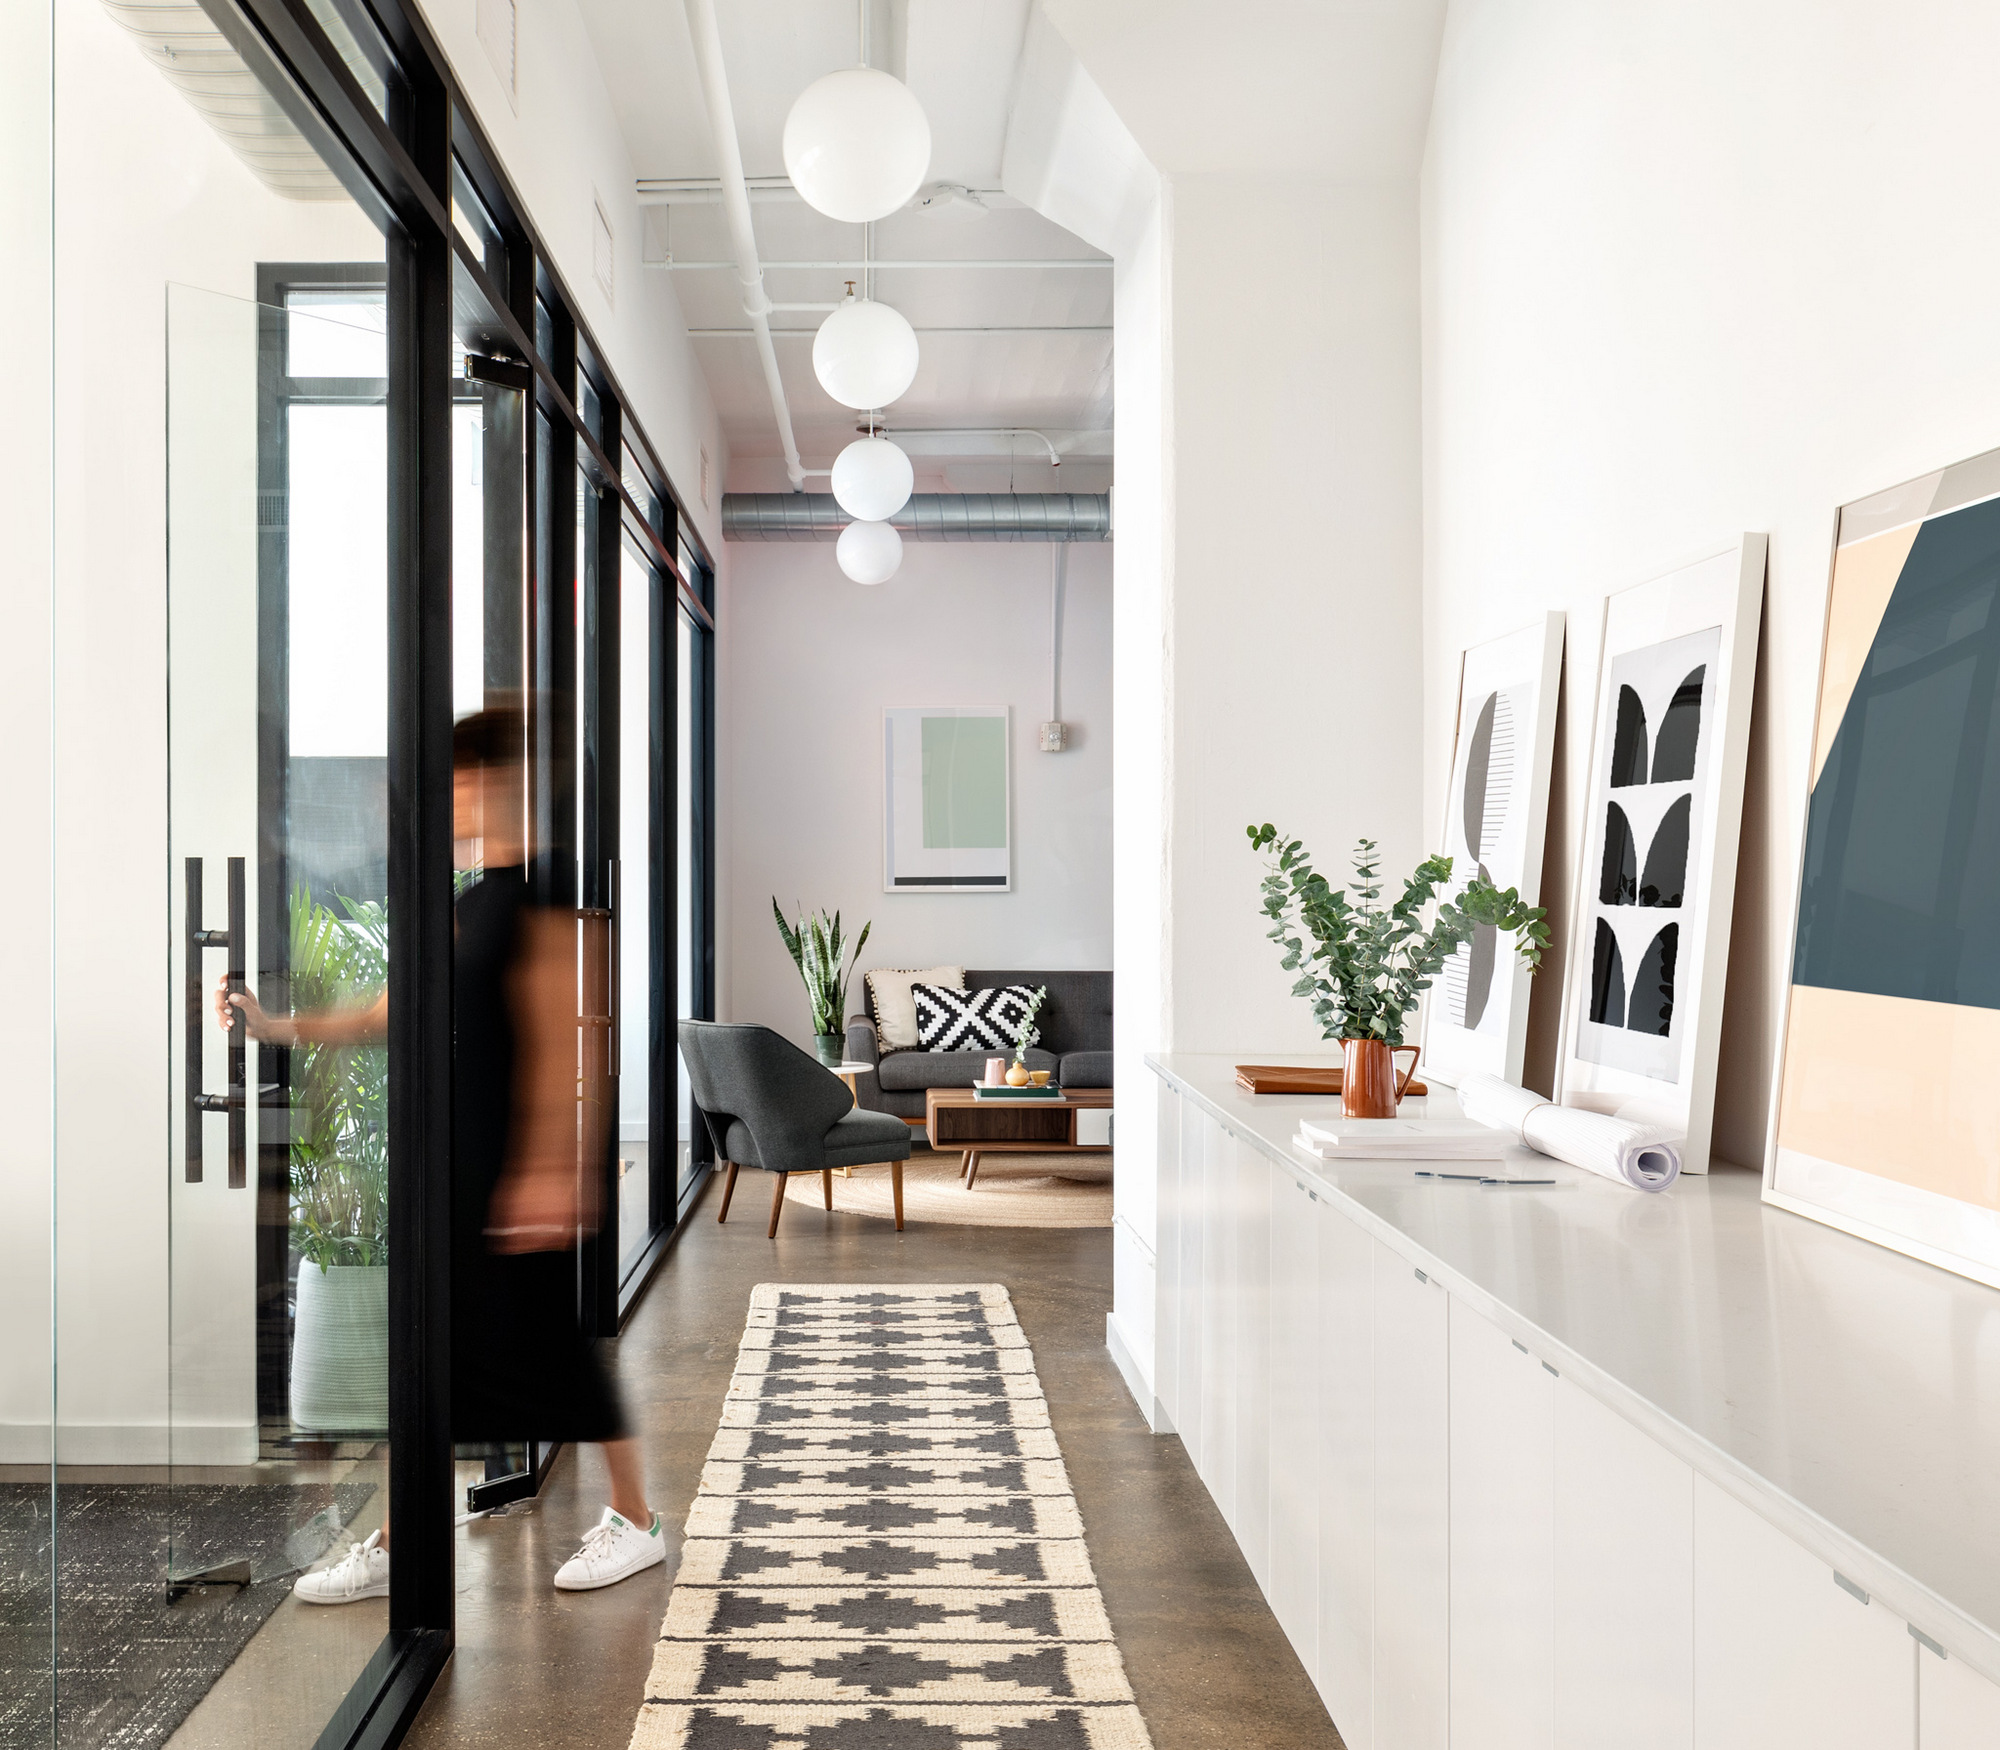 图片[2]|IA房地产集团办公室——纽约市|ART-Arrakis | 建筑室内设计的创新与灵感